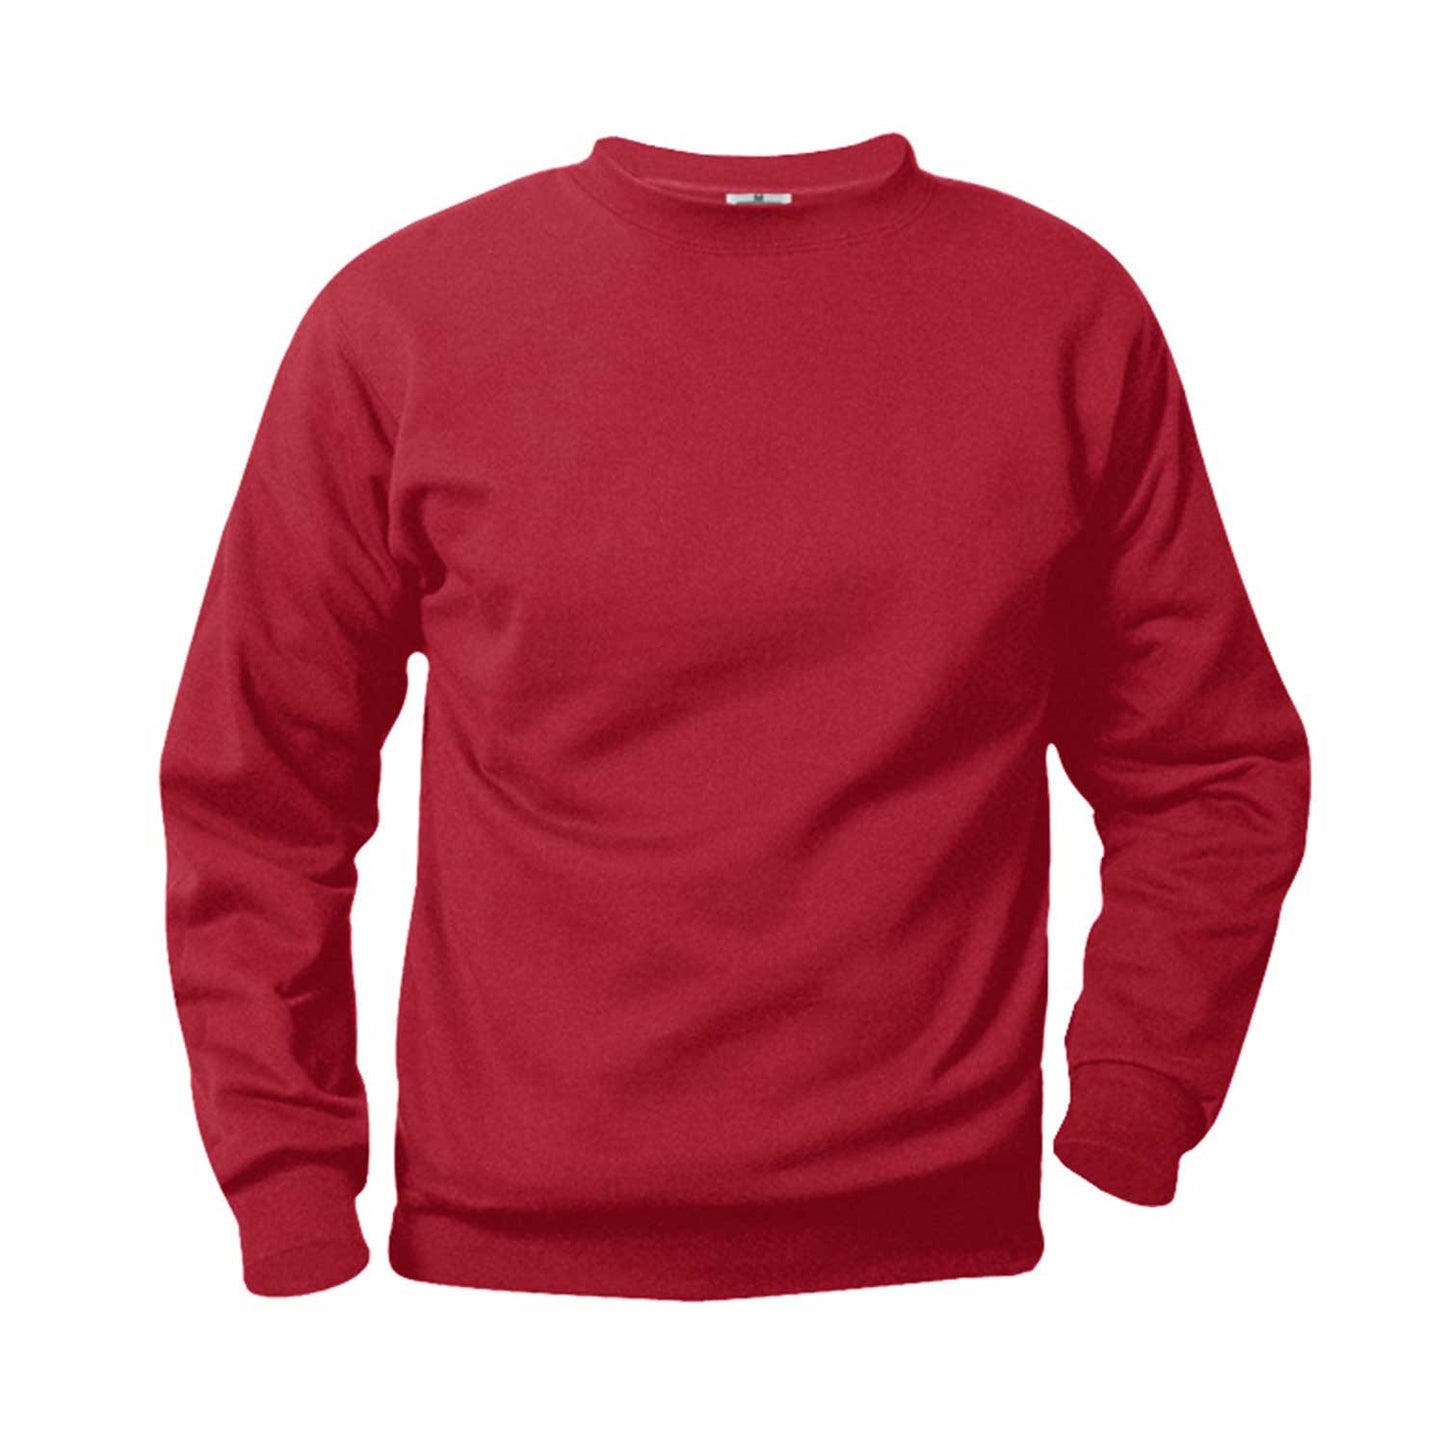 Unisex Crewneck Fleece Sweatshirt w/Logo - 1111